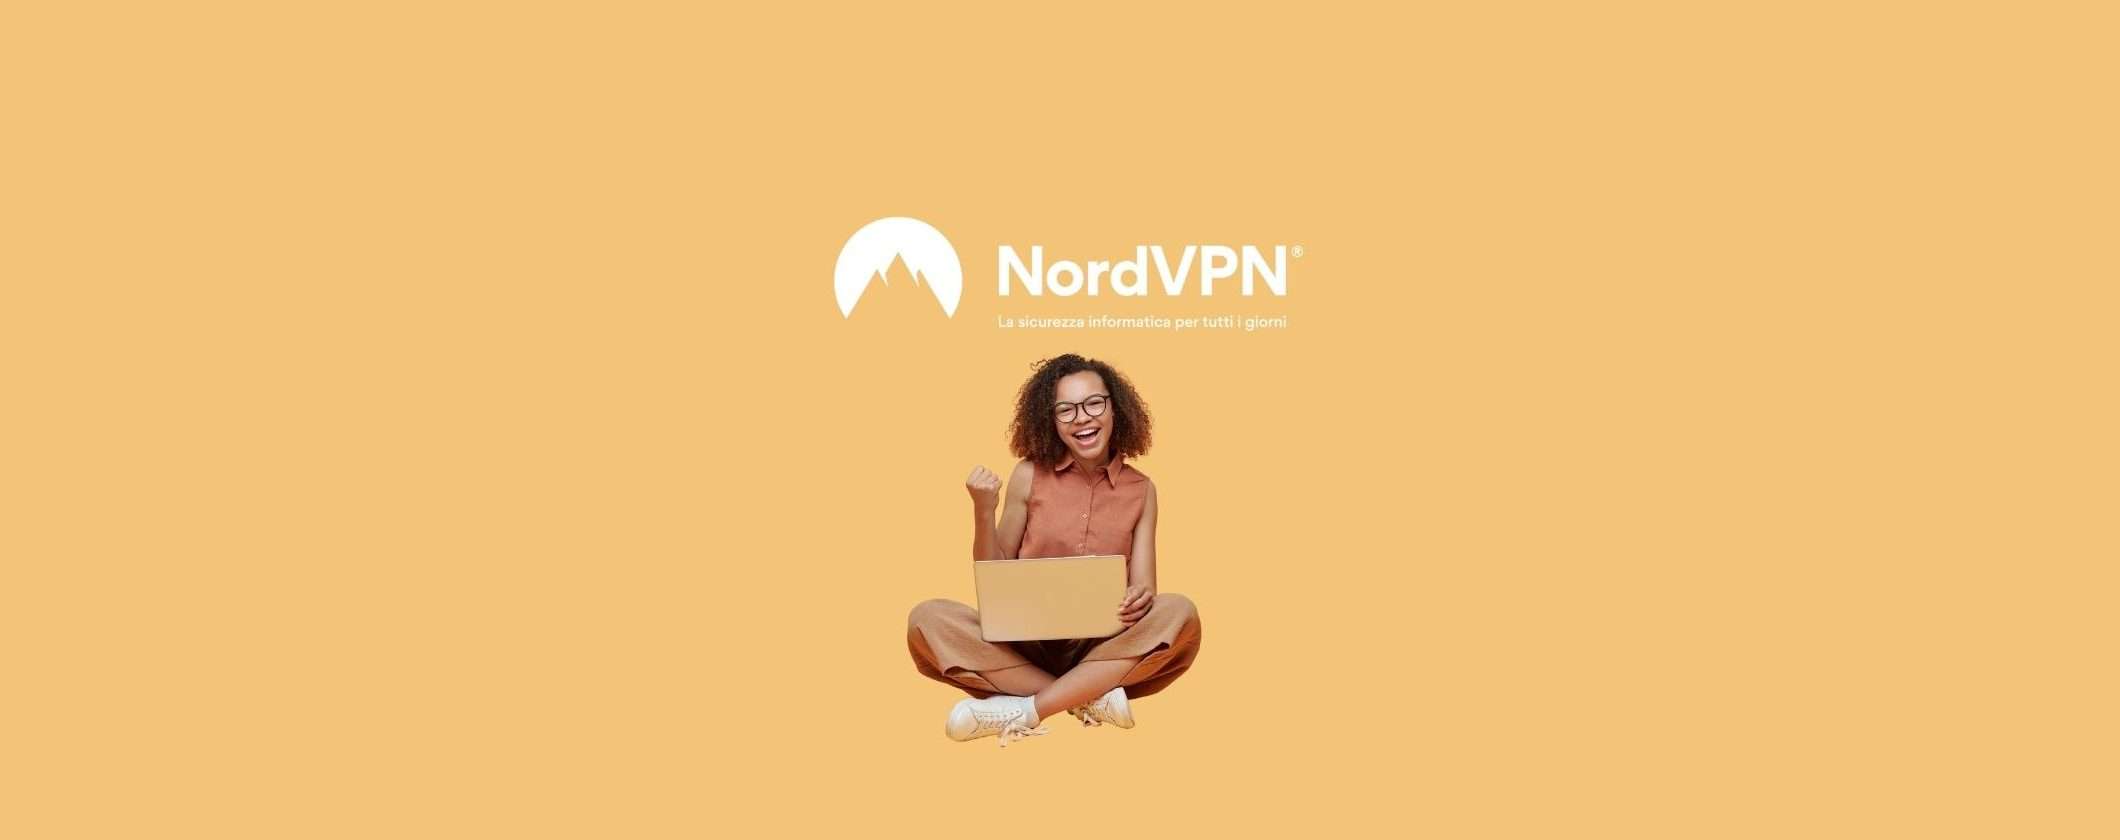 NordVPN è la soluzione completa per la tua difesa online